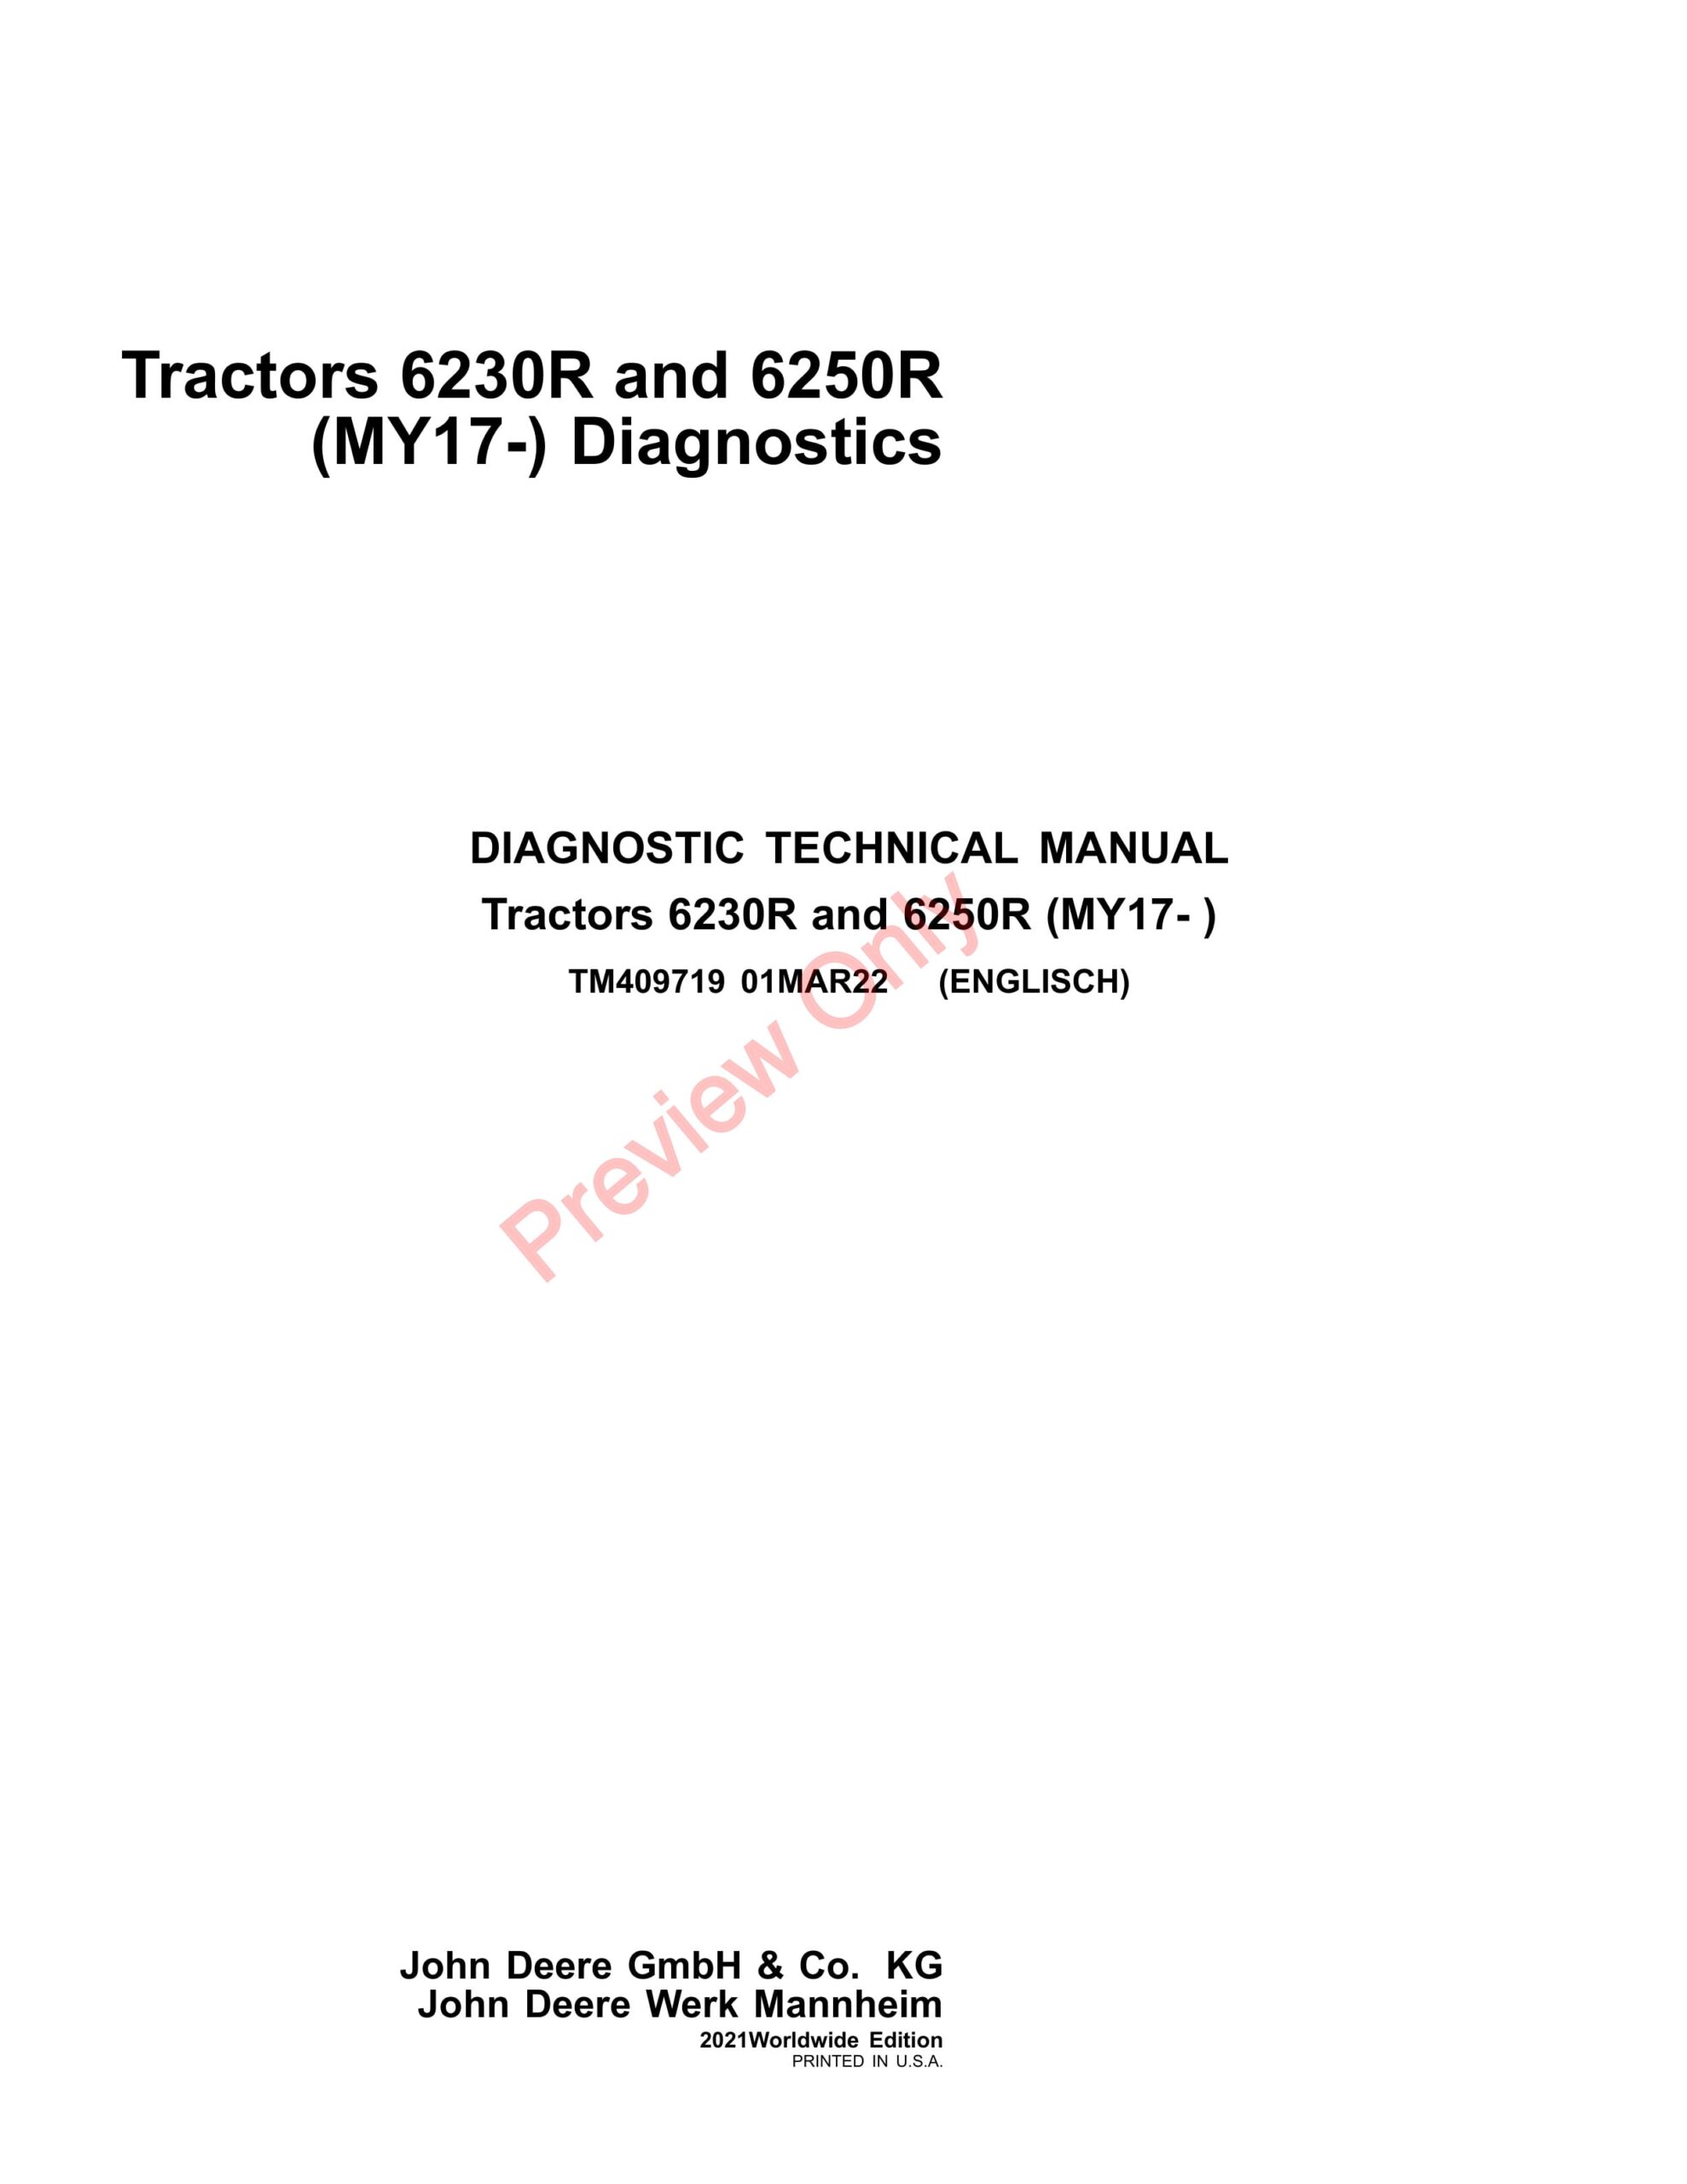 John Deere Tractors 6230R and 6250R (MY17-) Diagnostic Technical Manual TM409719 01MAR22-1